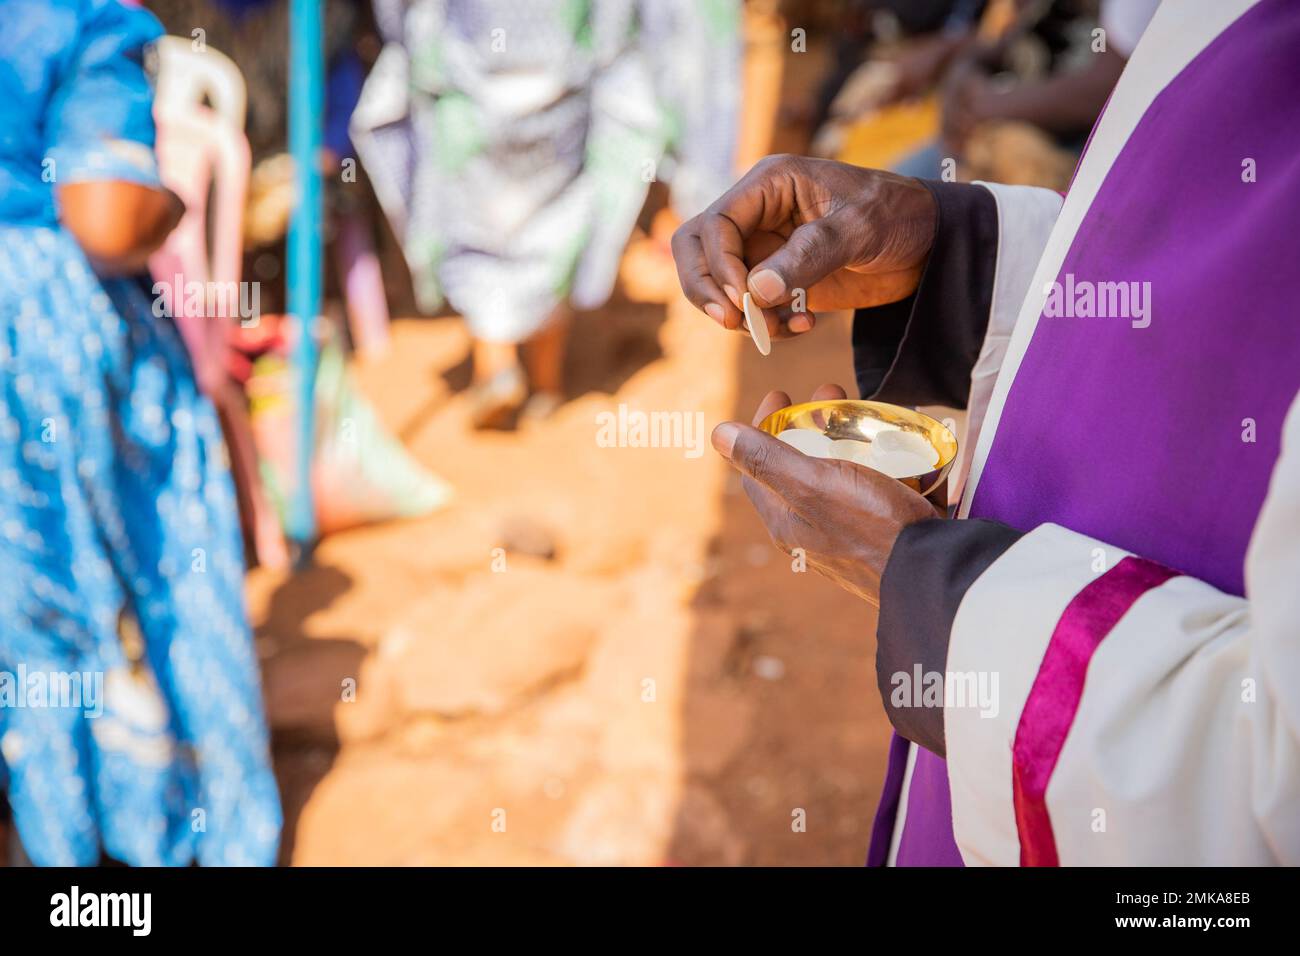 Gros plan des mains d'un prêtre africain qui est sur le point de donner le pain sacramentel aux croyants Banque D'Images